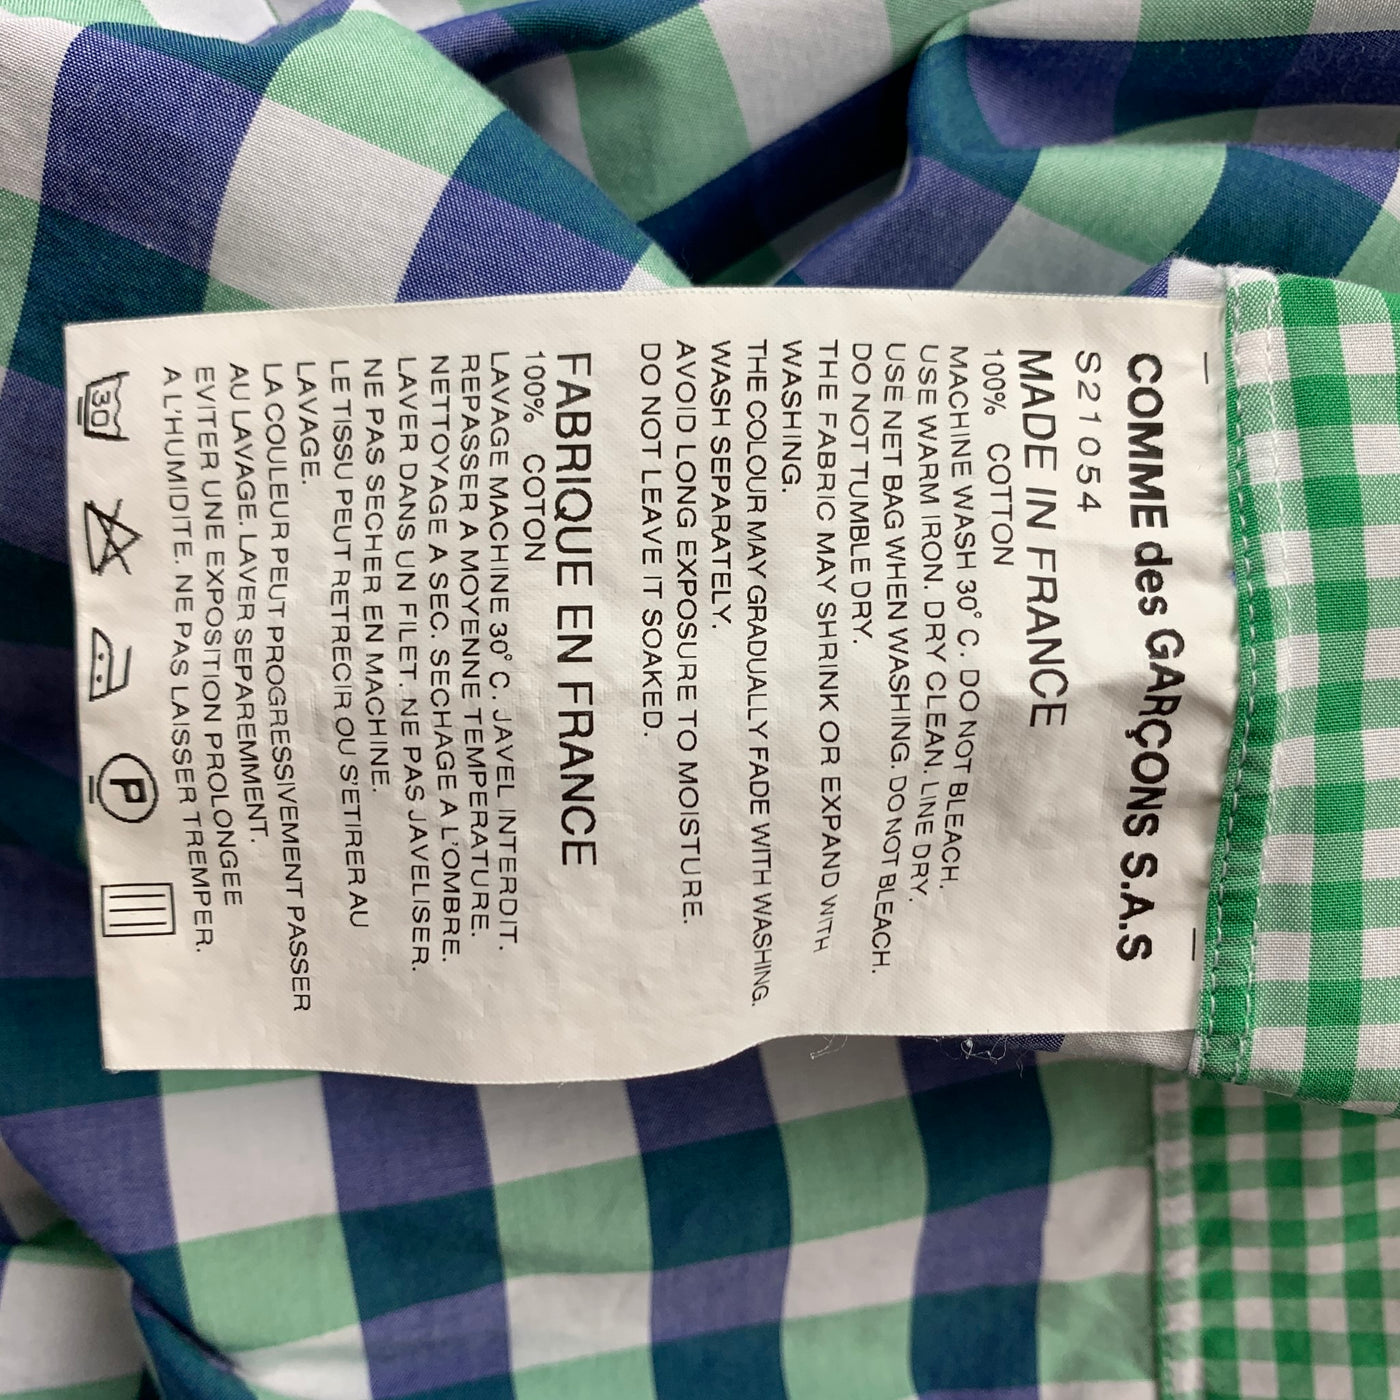 COMME des GARCONS SHIRT Size M Multi-Color Checkered Cotton Short Sleeve Shirt